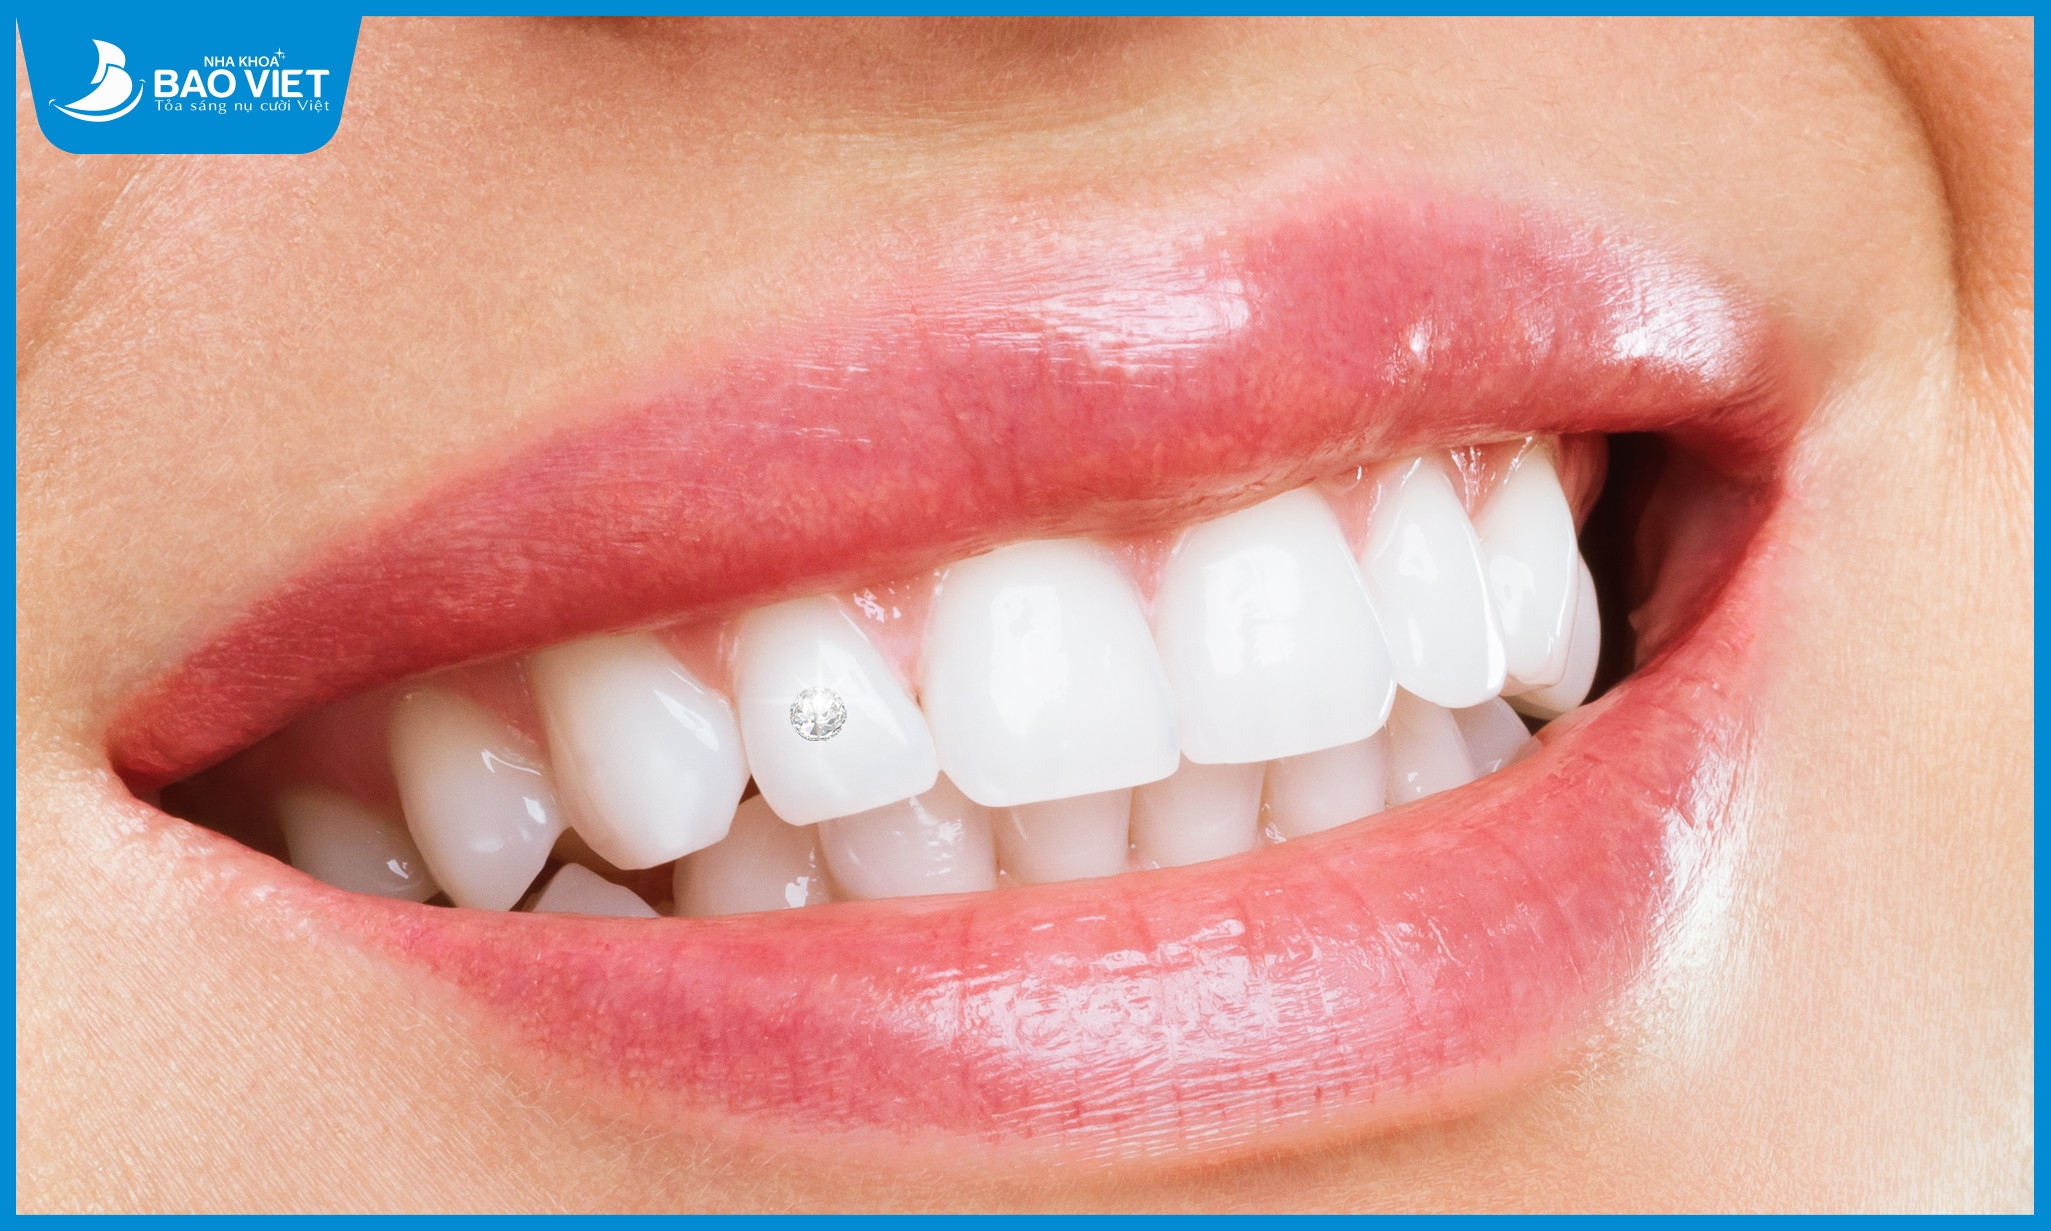 Trường hợp răng đều đẹp, sáng màu, không bị vỡ mẻ đính đá sẽ hiệu quả hơn